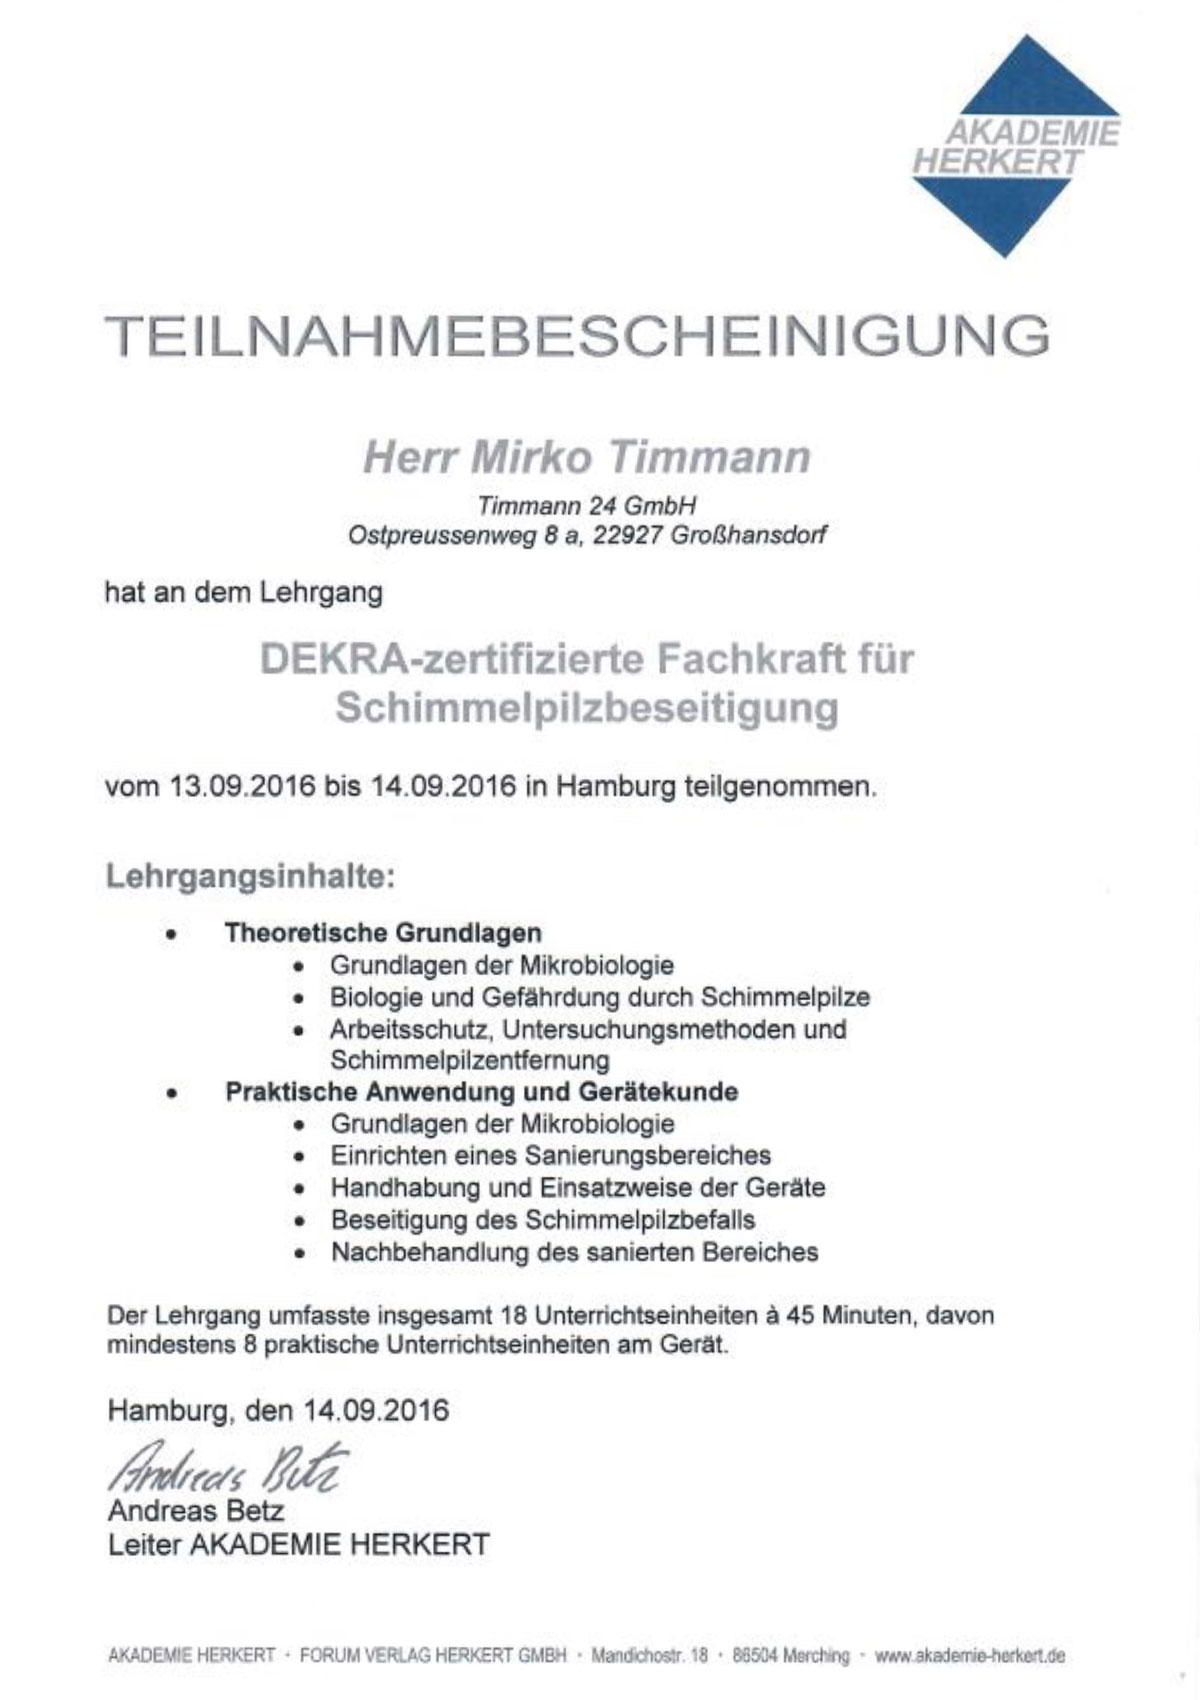 Zertifikat Fachkraft für Schimmelbeseitigung Mirko Timmann